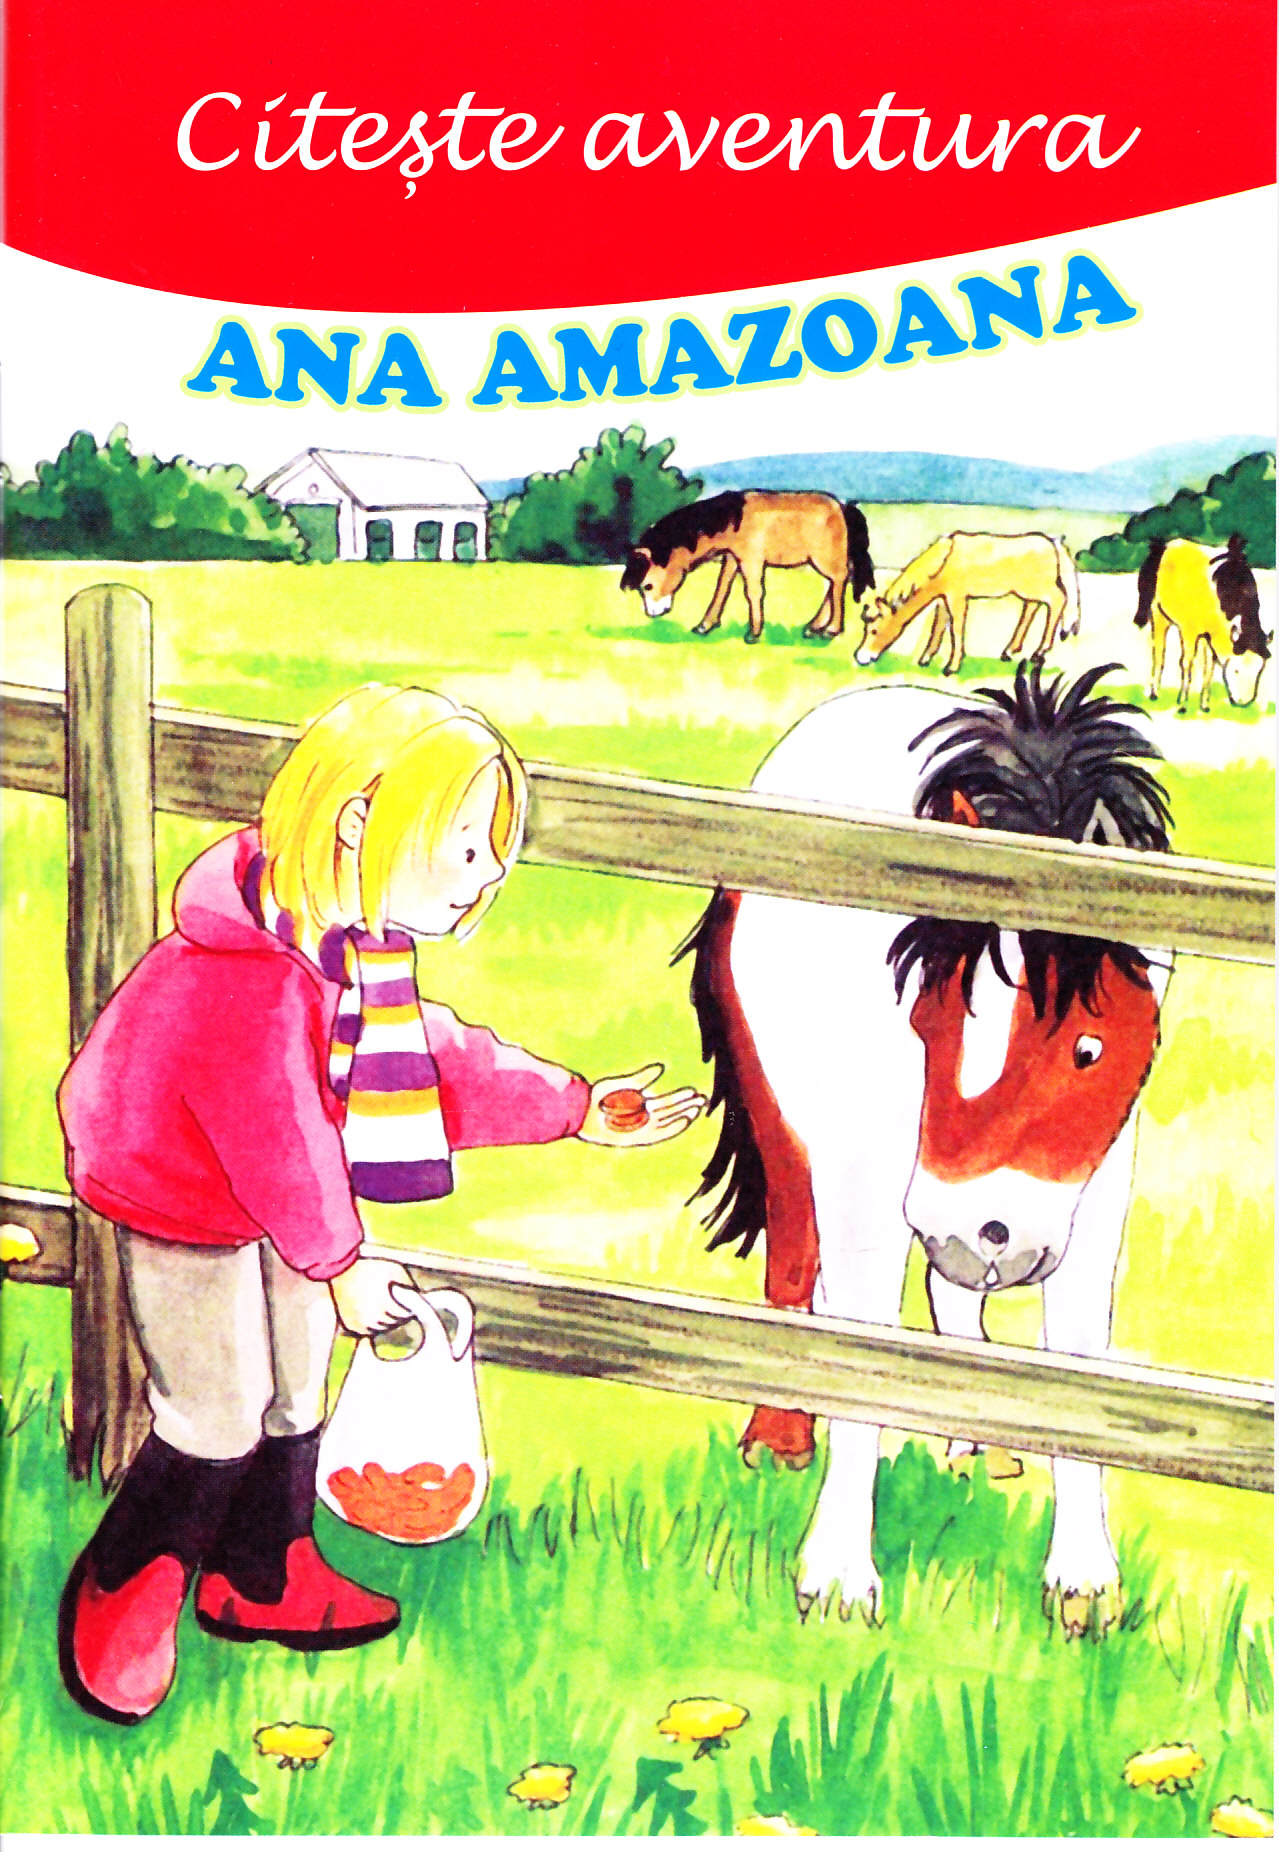 Citeste aventura: Ana amazoana